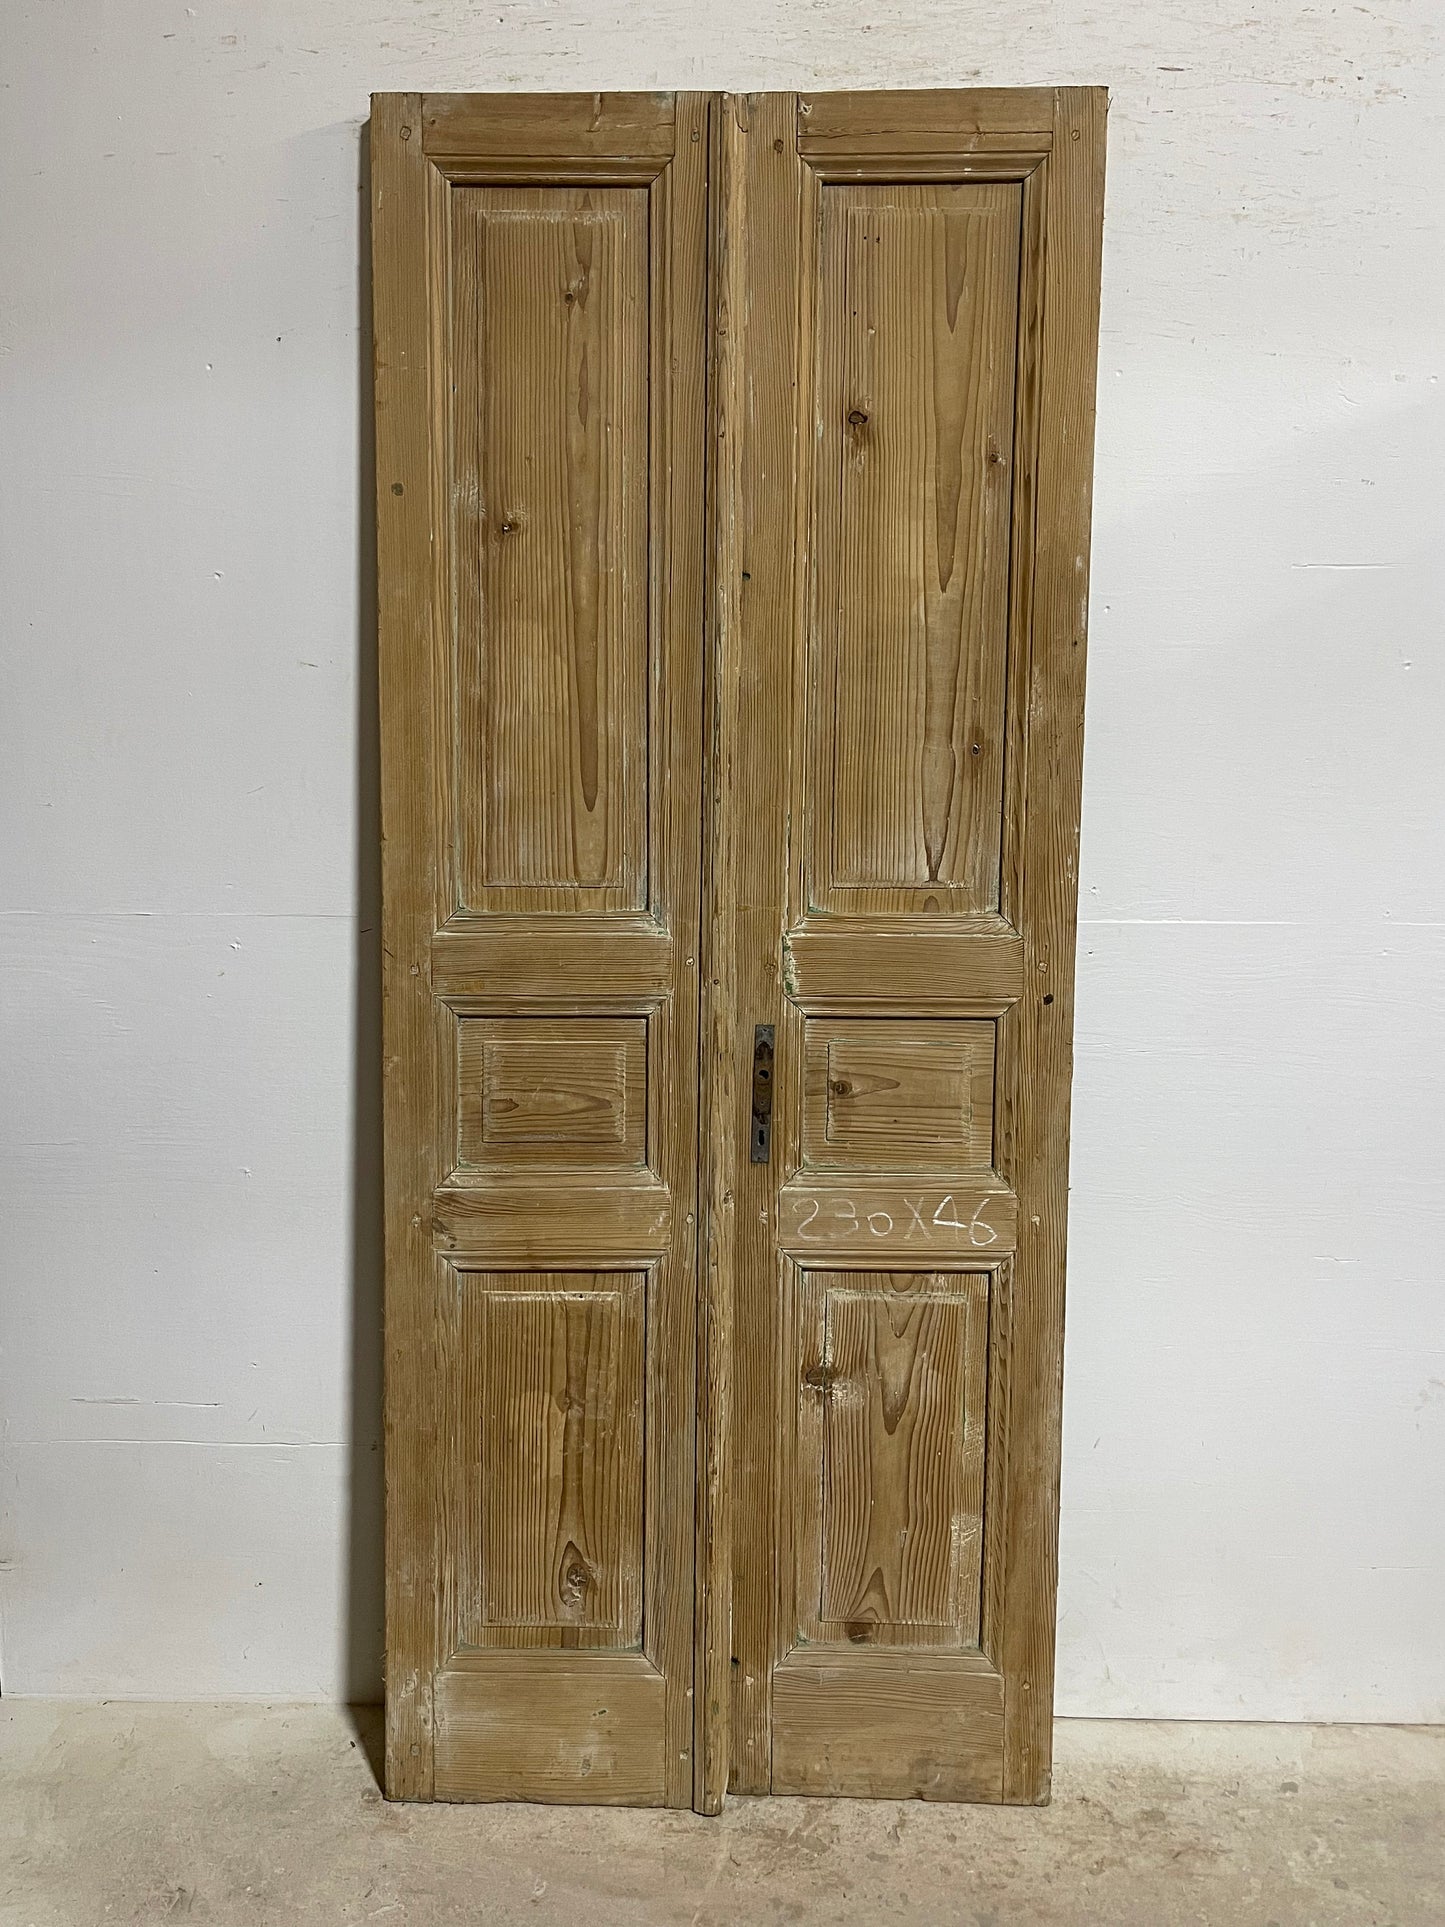 Antique French panel doors (90.25x36.75) I113s